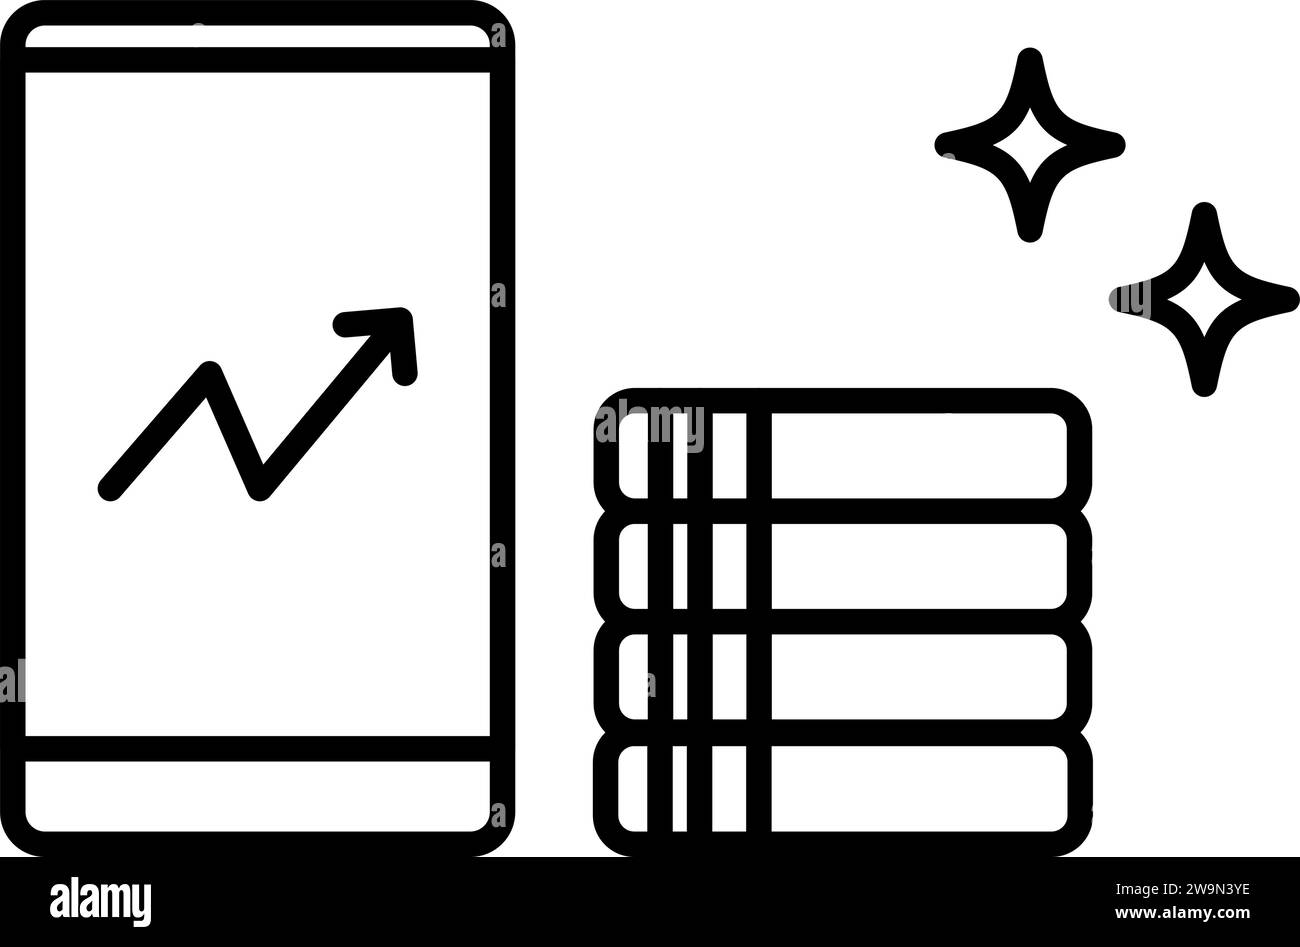 Abbildung einer rentablen Investition, Smartphone-Karte und Münzsymbol, einfache Strichzeichnung, Vektorillustration Stock Vektor